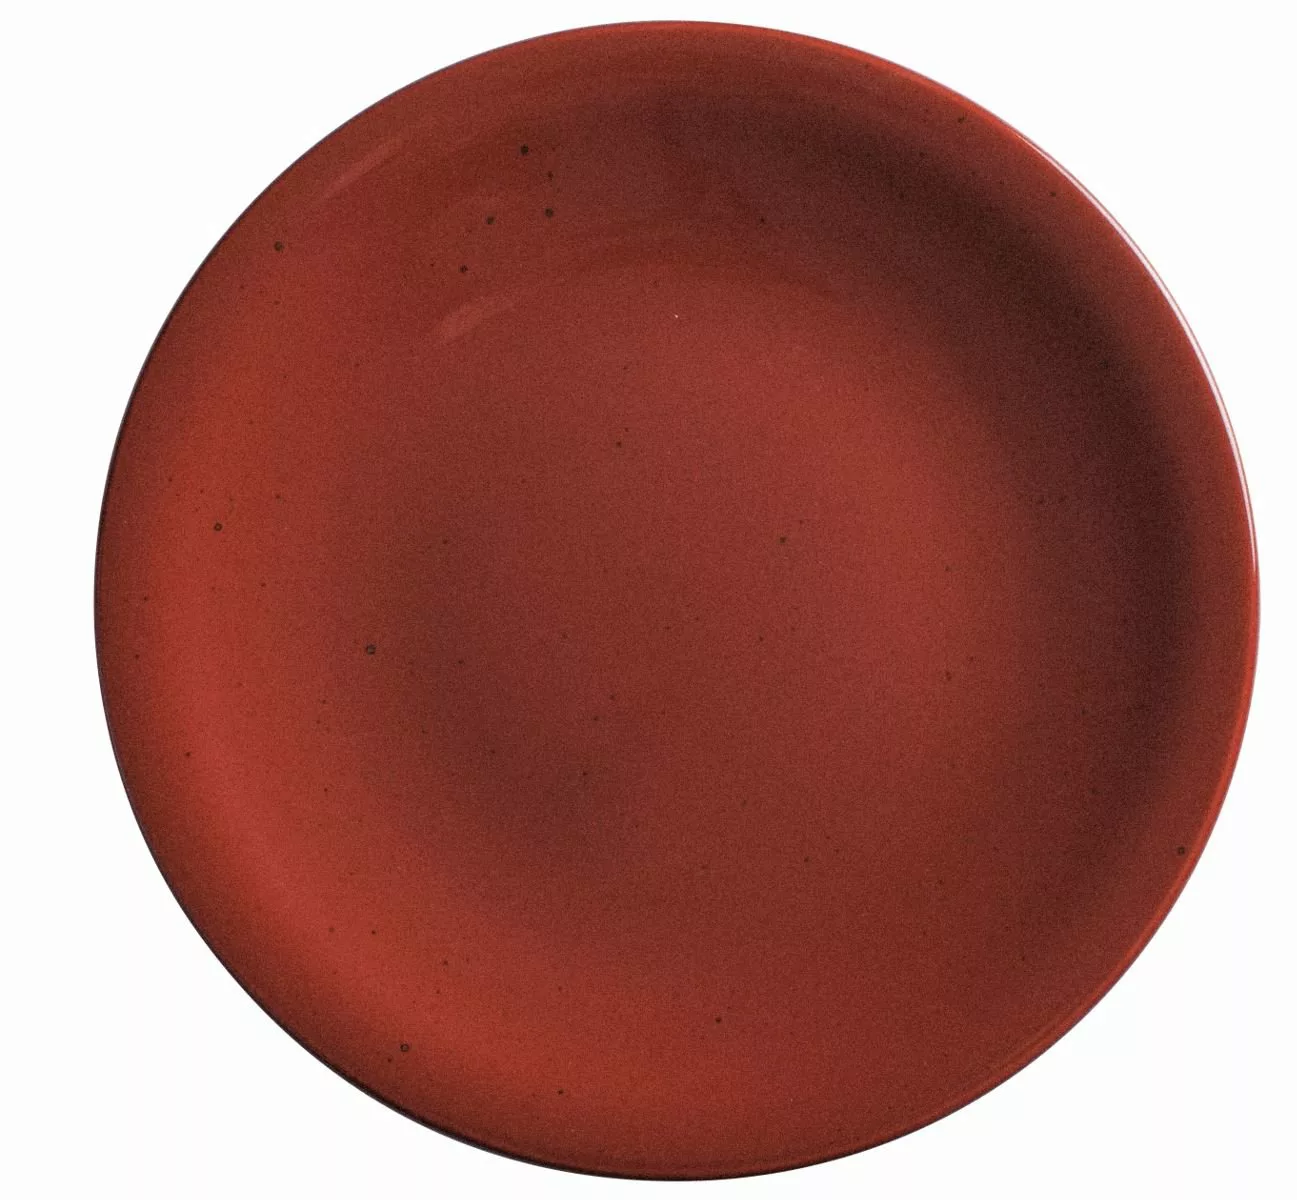 KAHLA siena red Homestyle siena red Pizzateller 31 cm (rot) günstig online kaufen